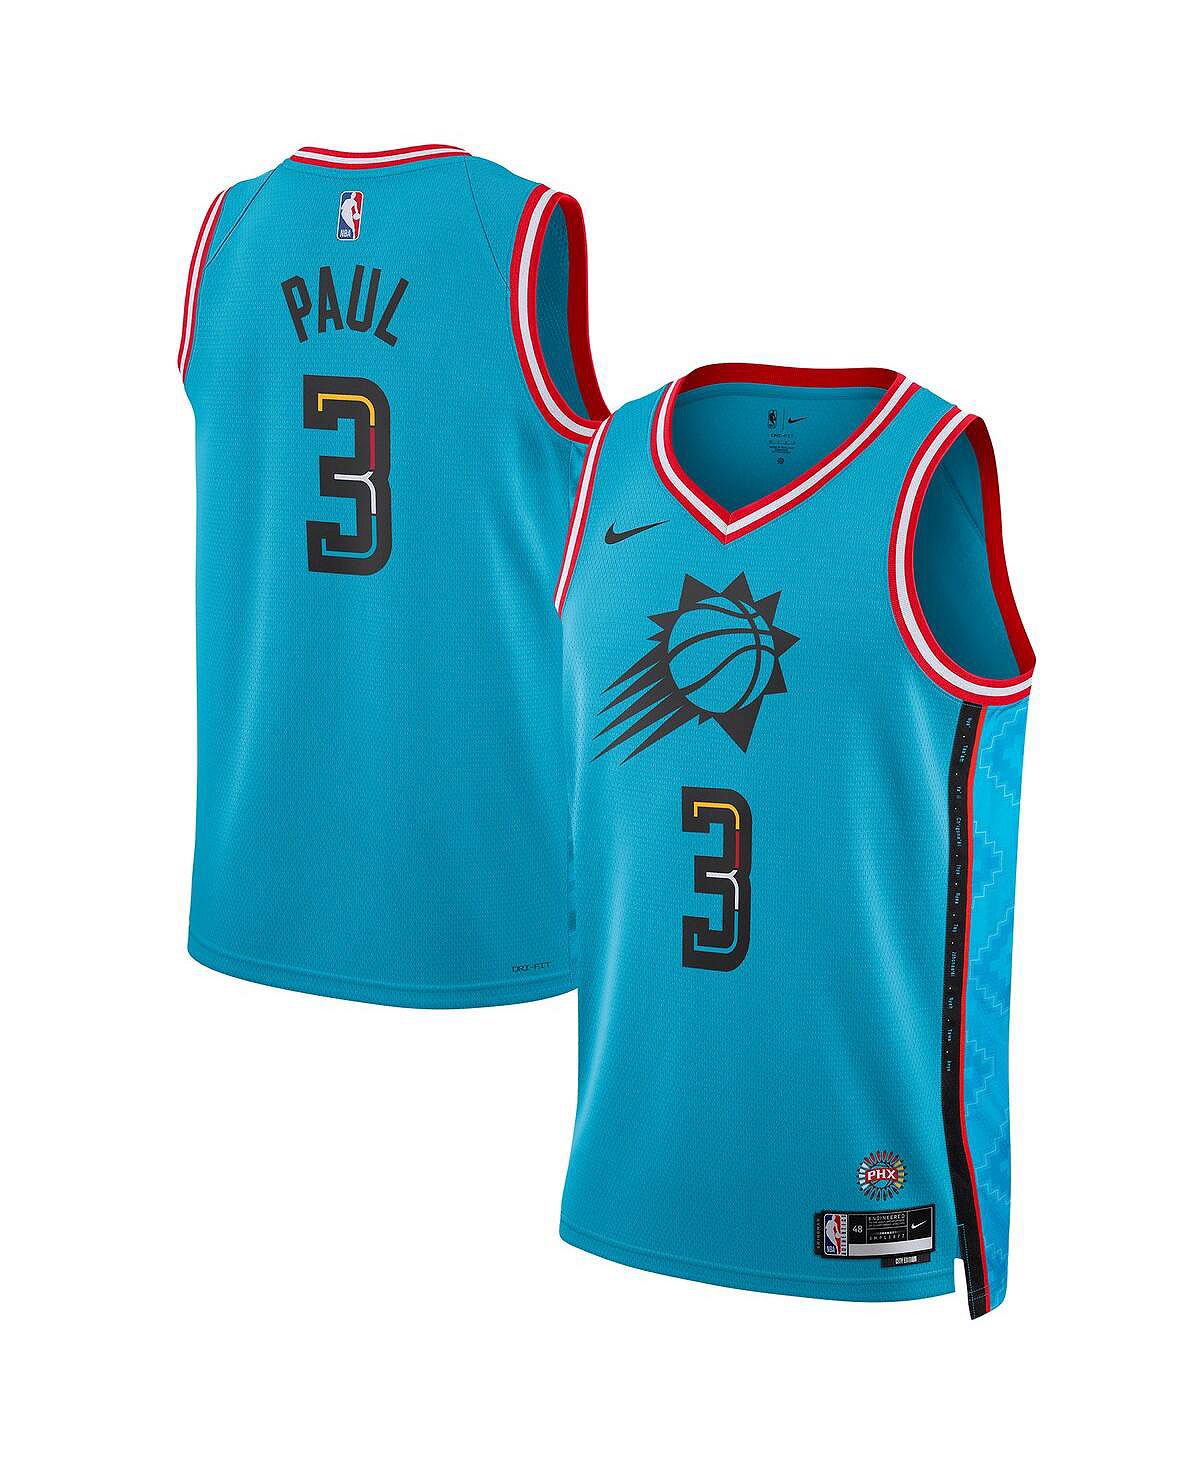 Футболка Nike Chris Paul Phoenix Suns 2022/23 Swingman Size S/M, бирюзовый цена и фото